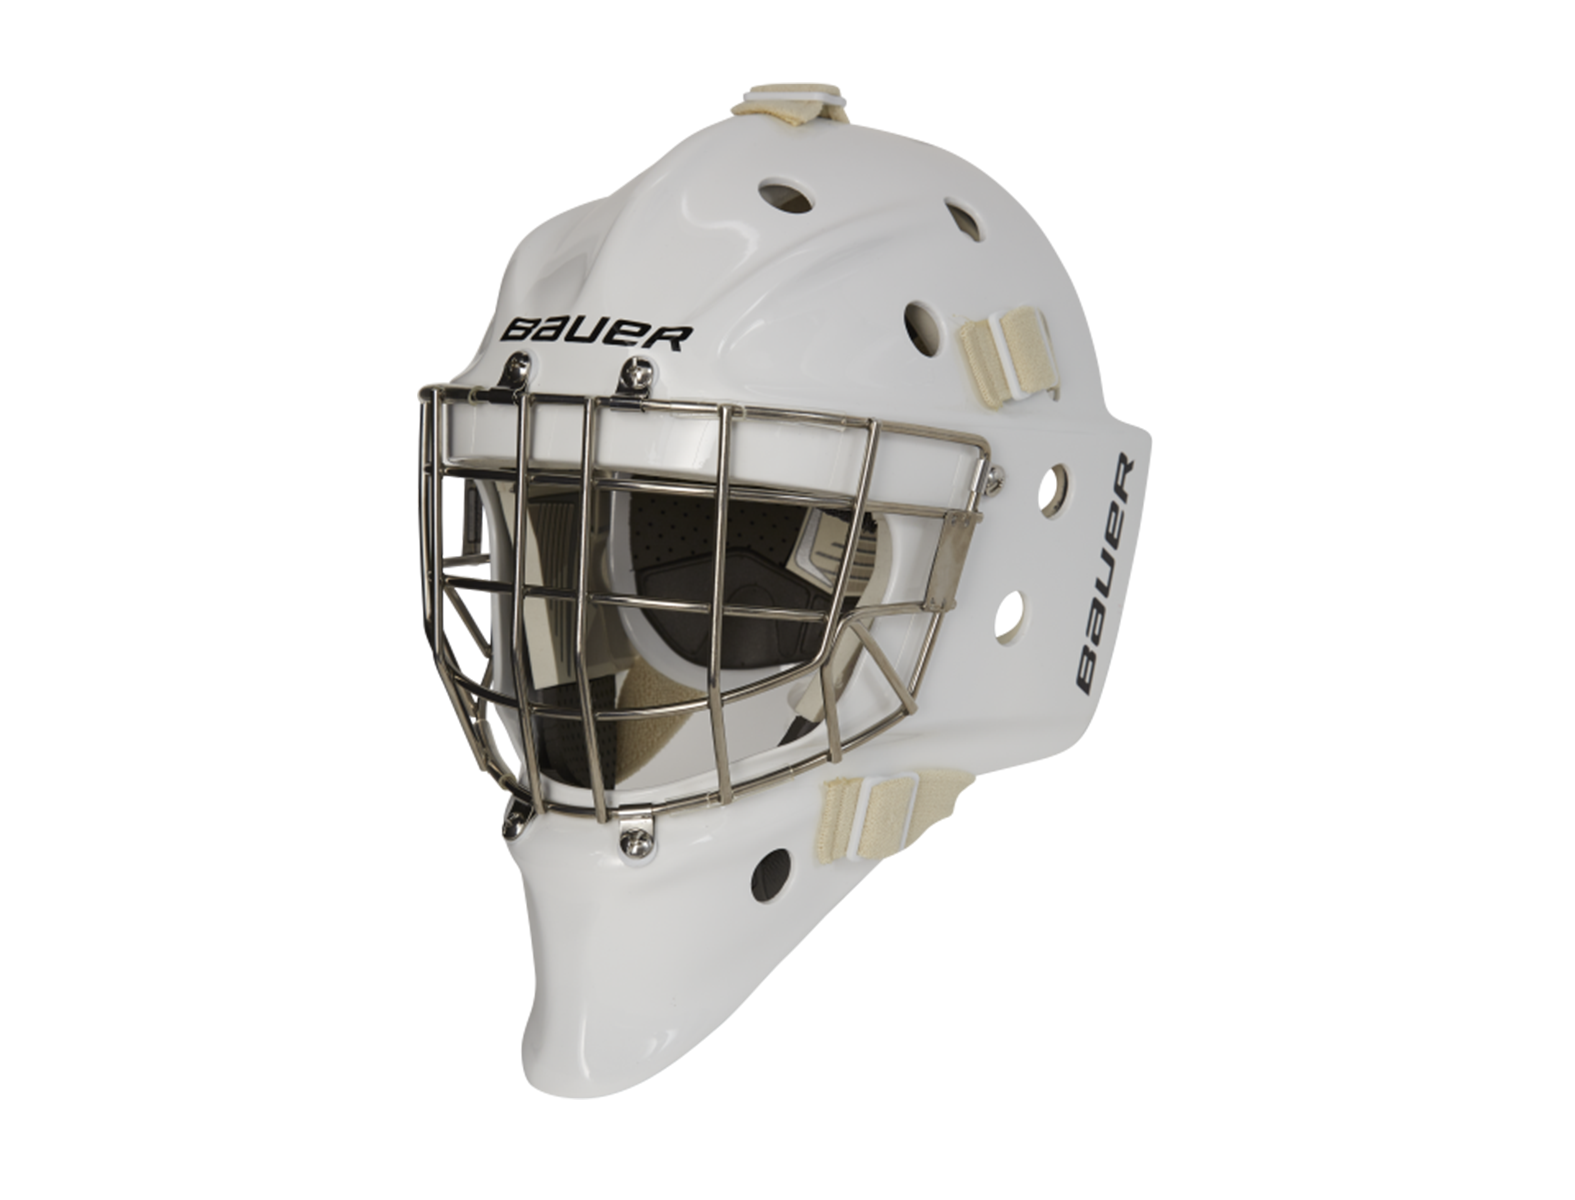 Lv Supreme Hockey Mask